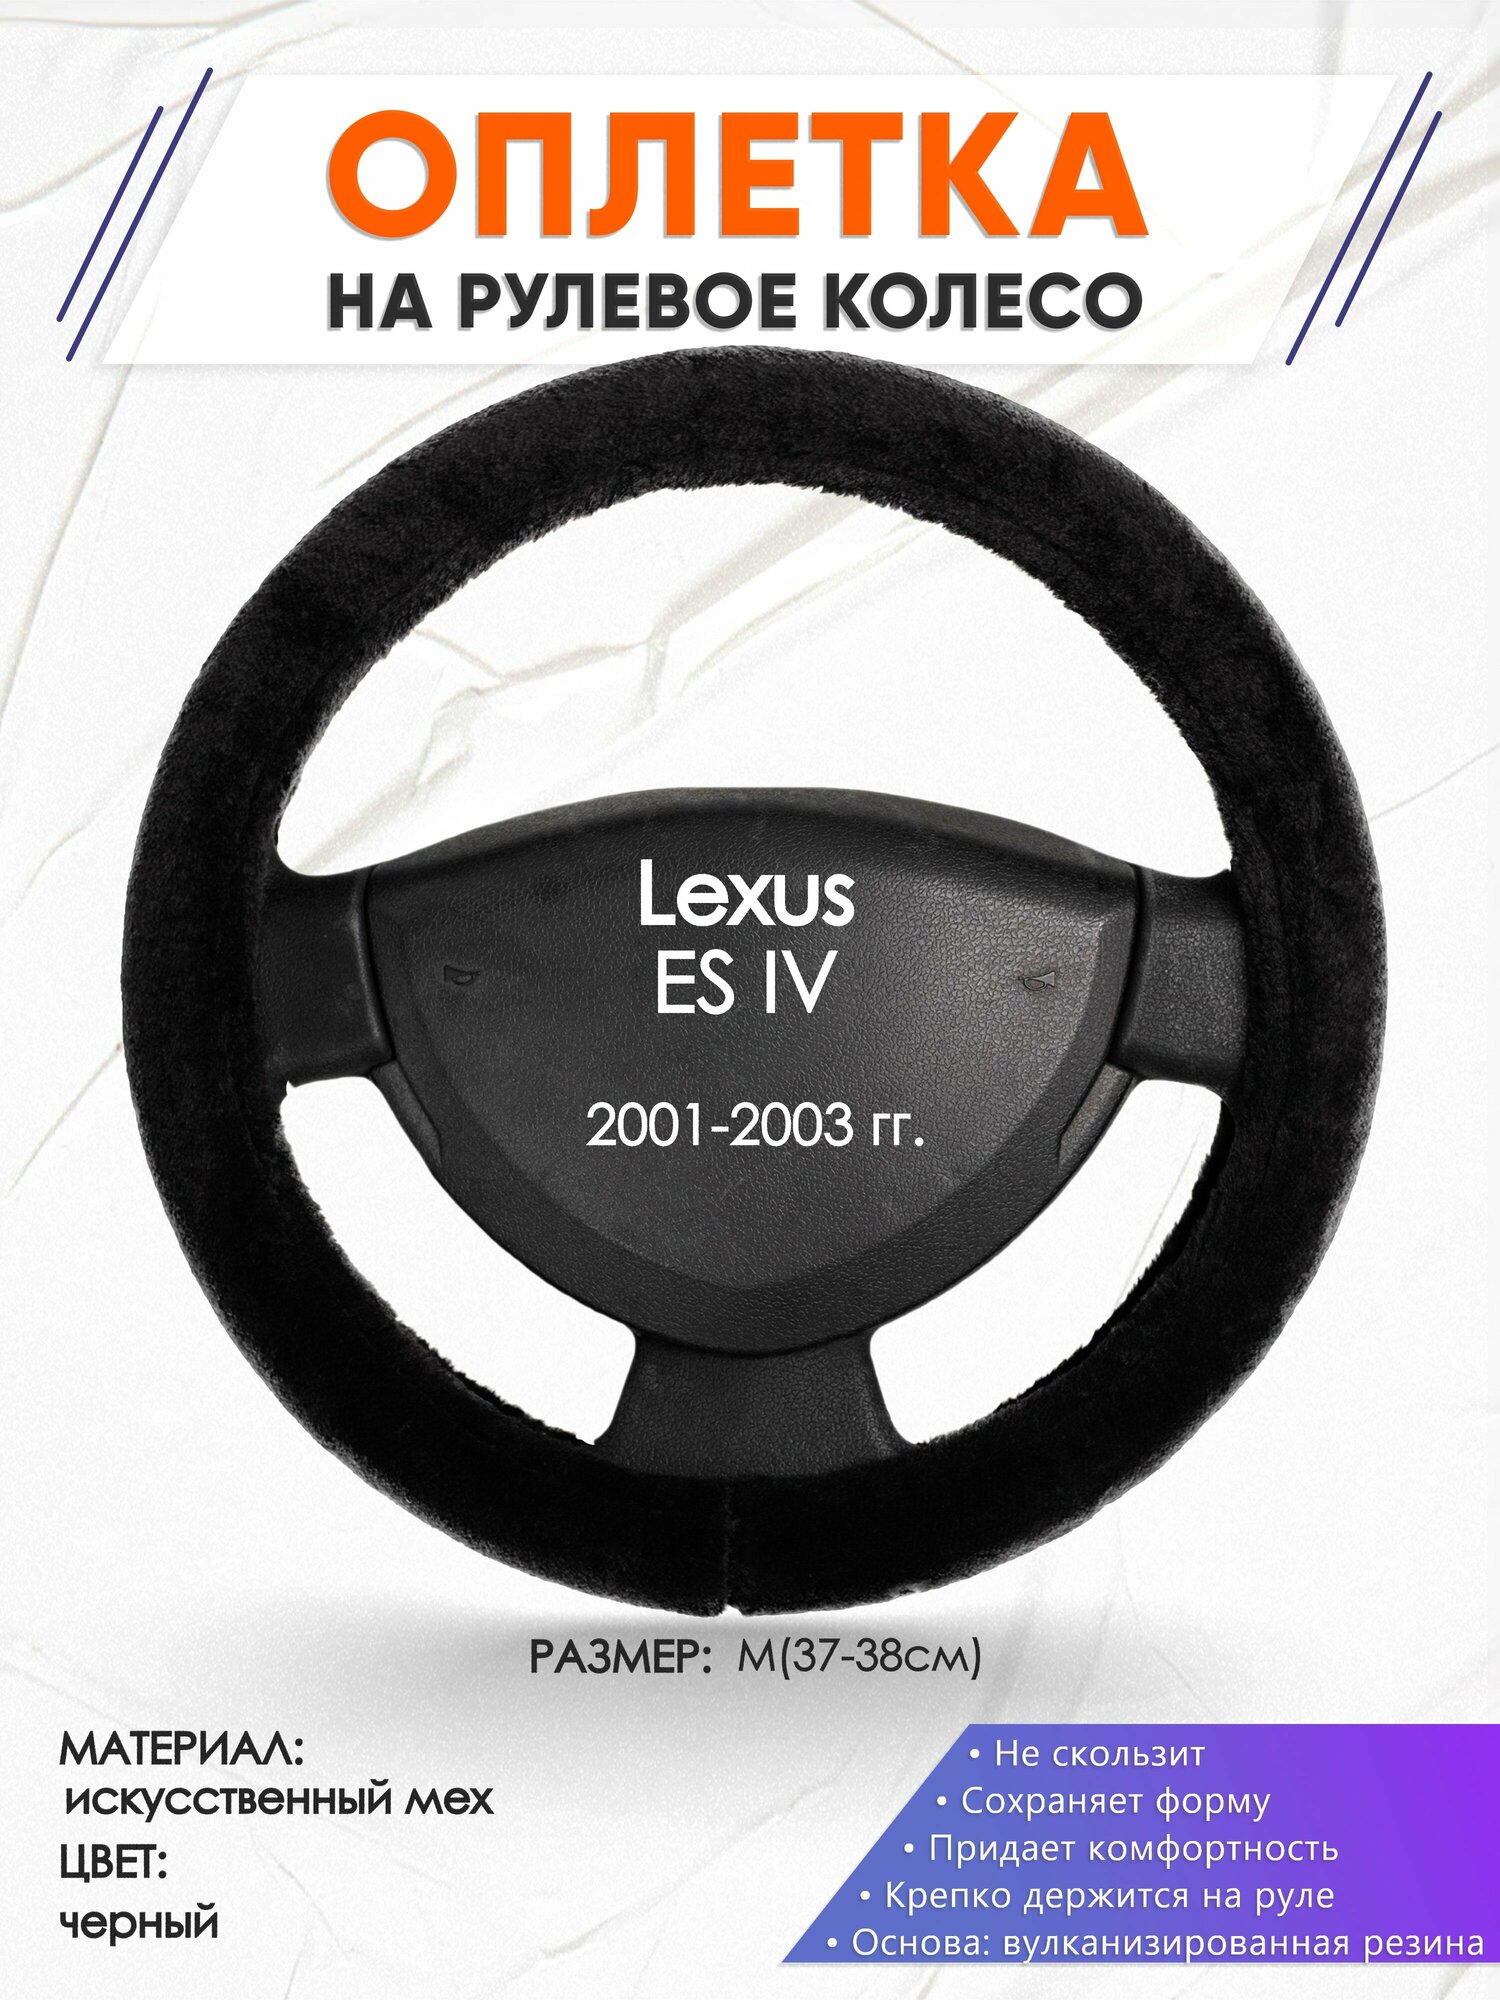 Оплетка наруль для Lexus ES 4(Лексус ЕС 4) 2001-2003 годов выпуска, размер M(37-38см), Искусственный мех 45